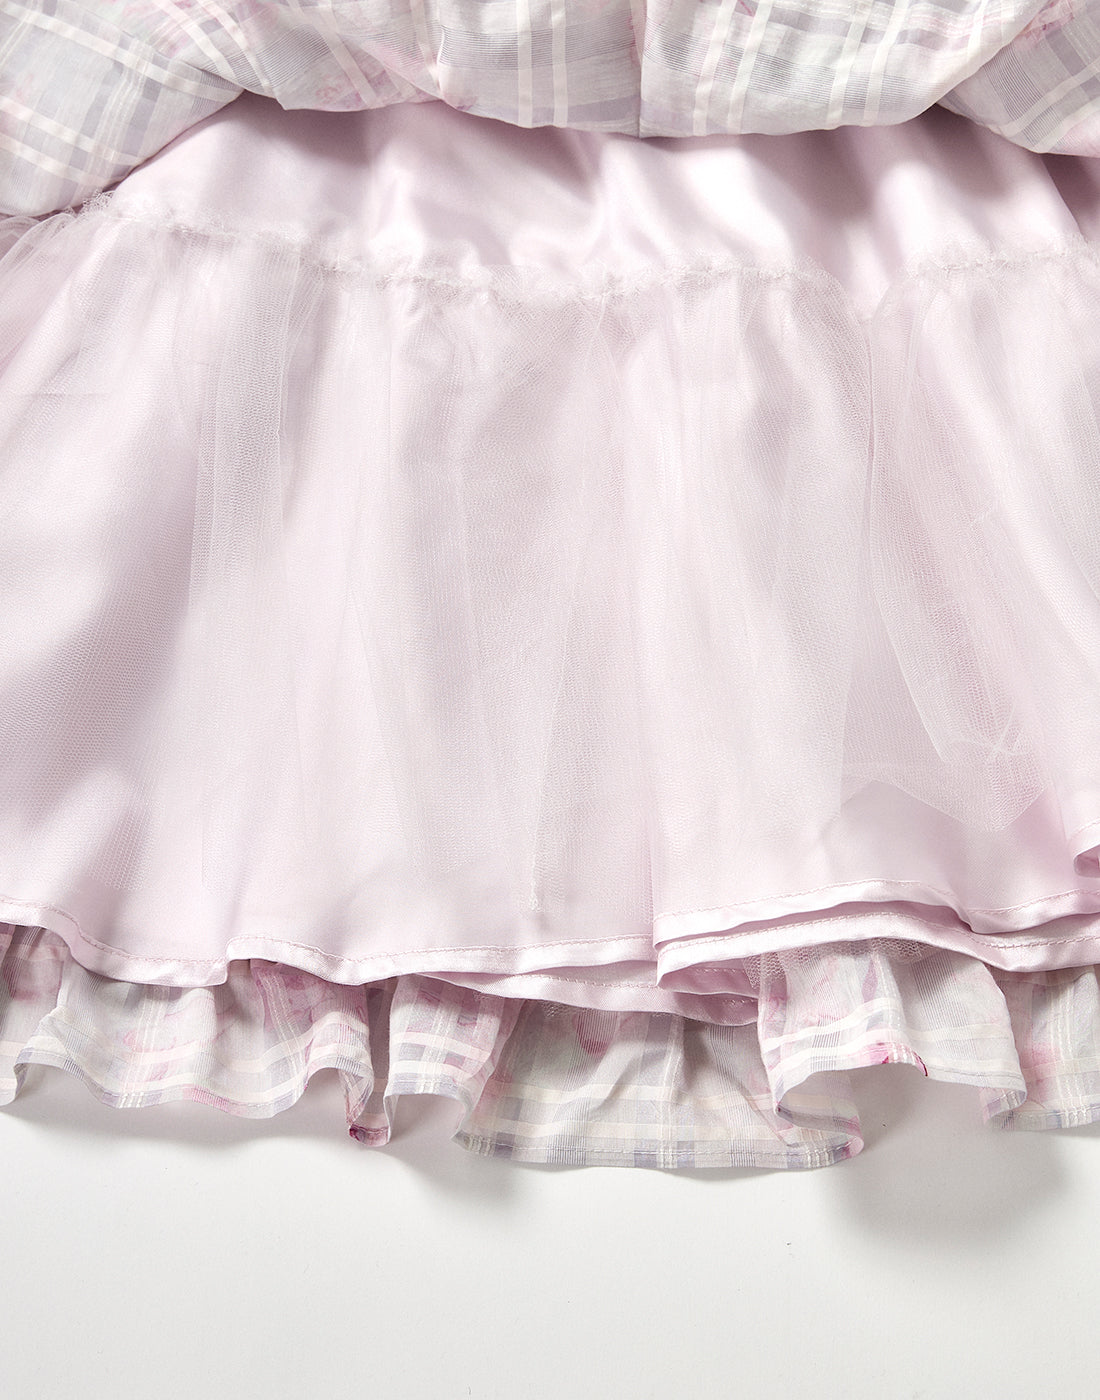 【5月発送】Sweet fragrance dollスカート